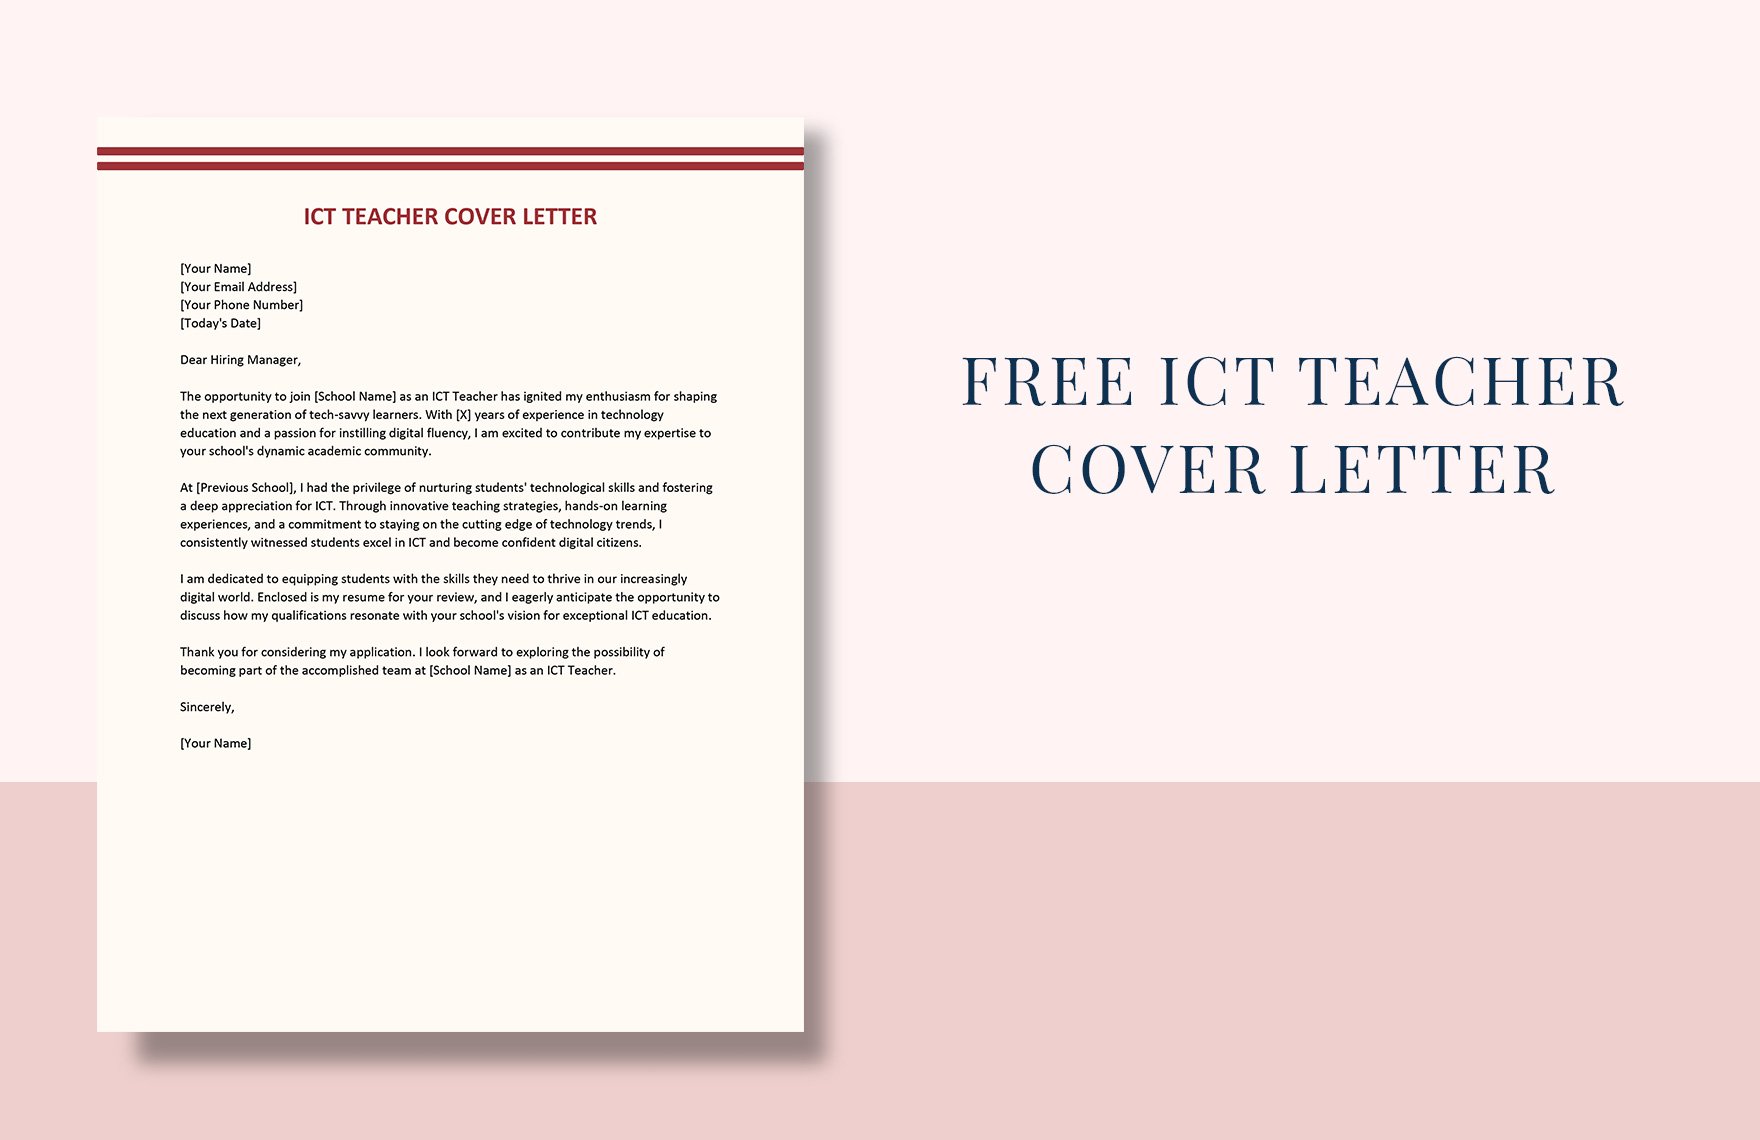 ICT Teacher Cover Letter